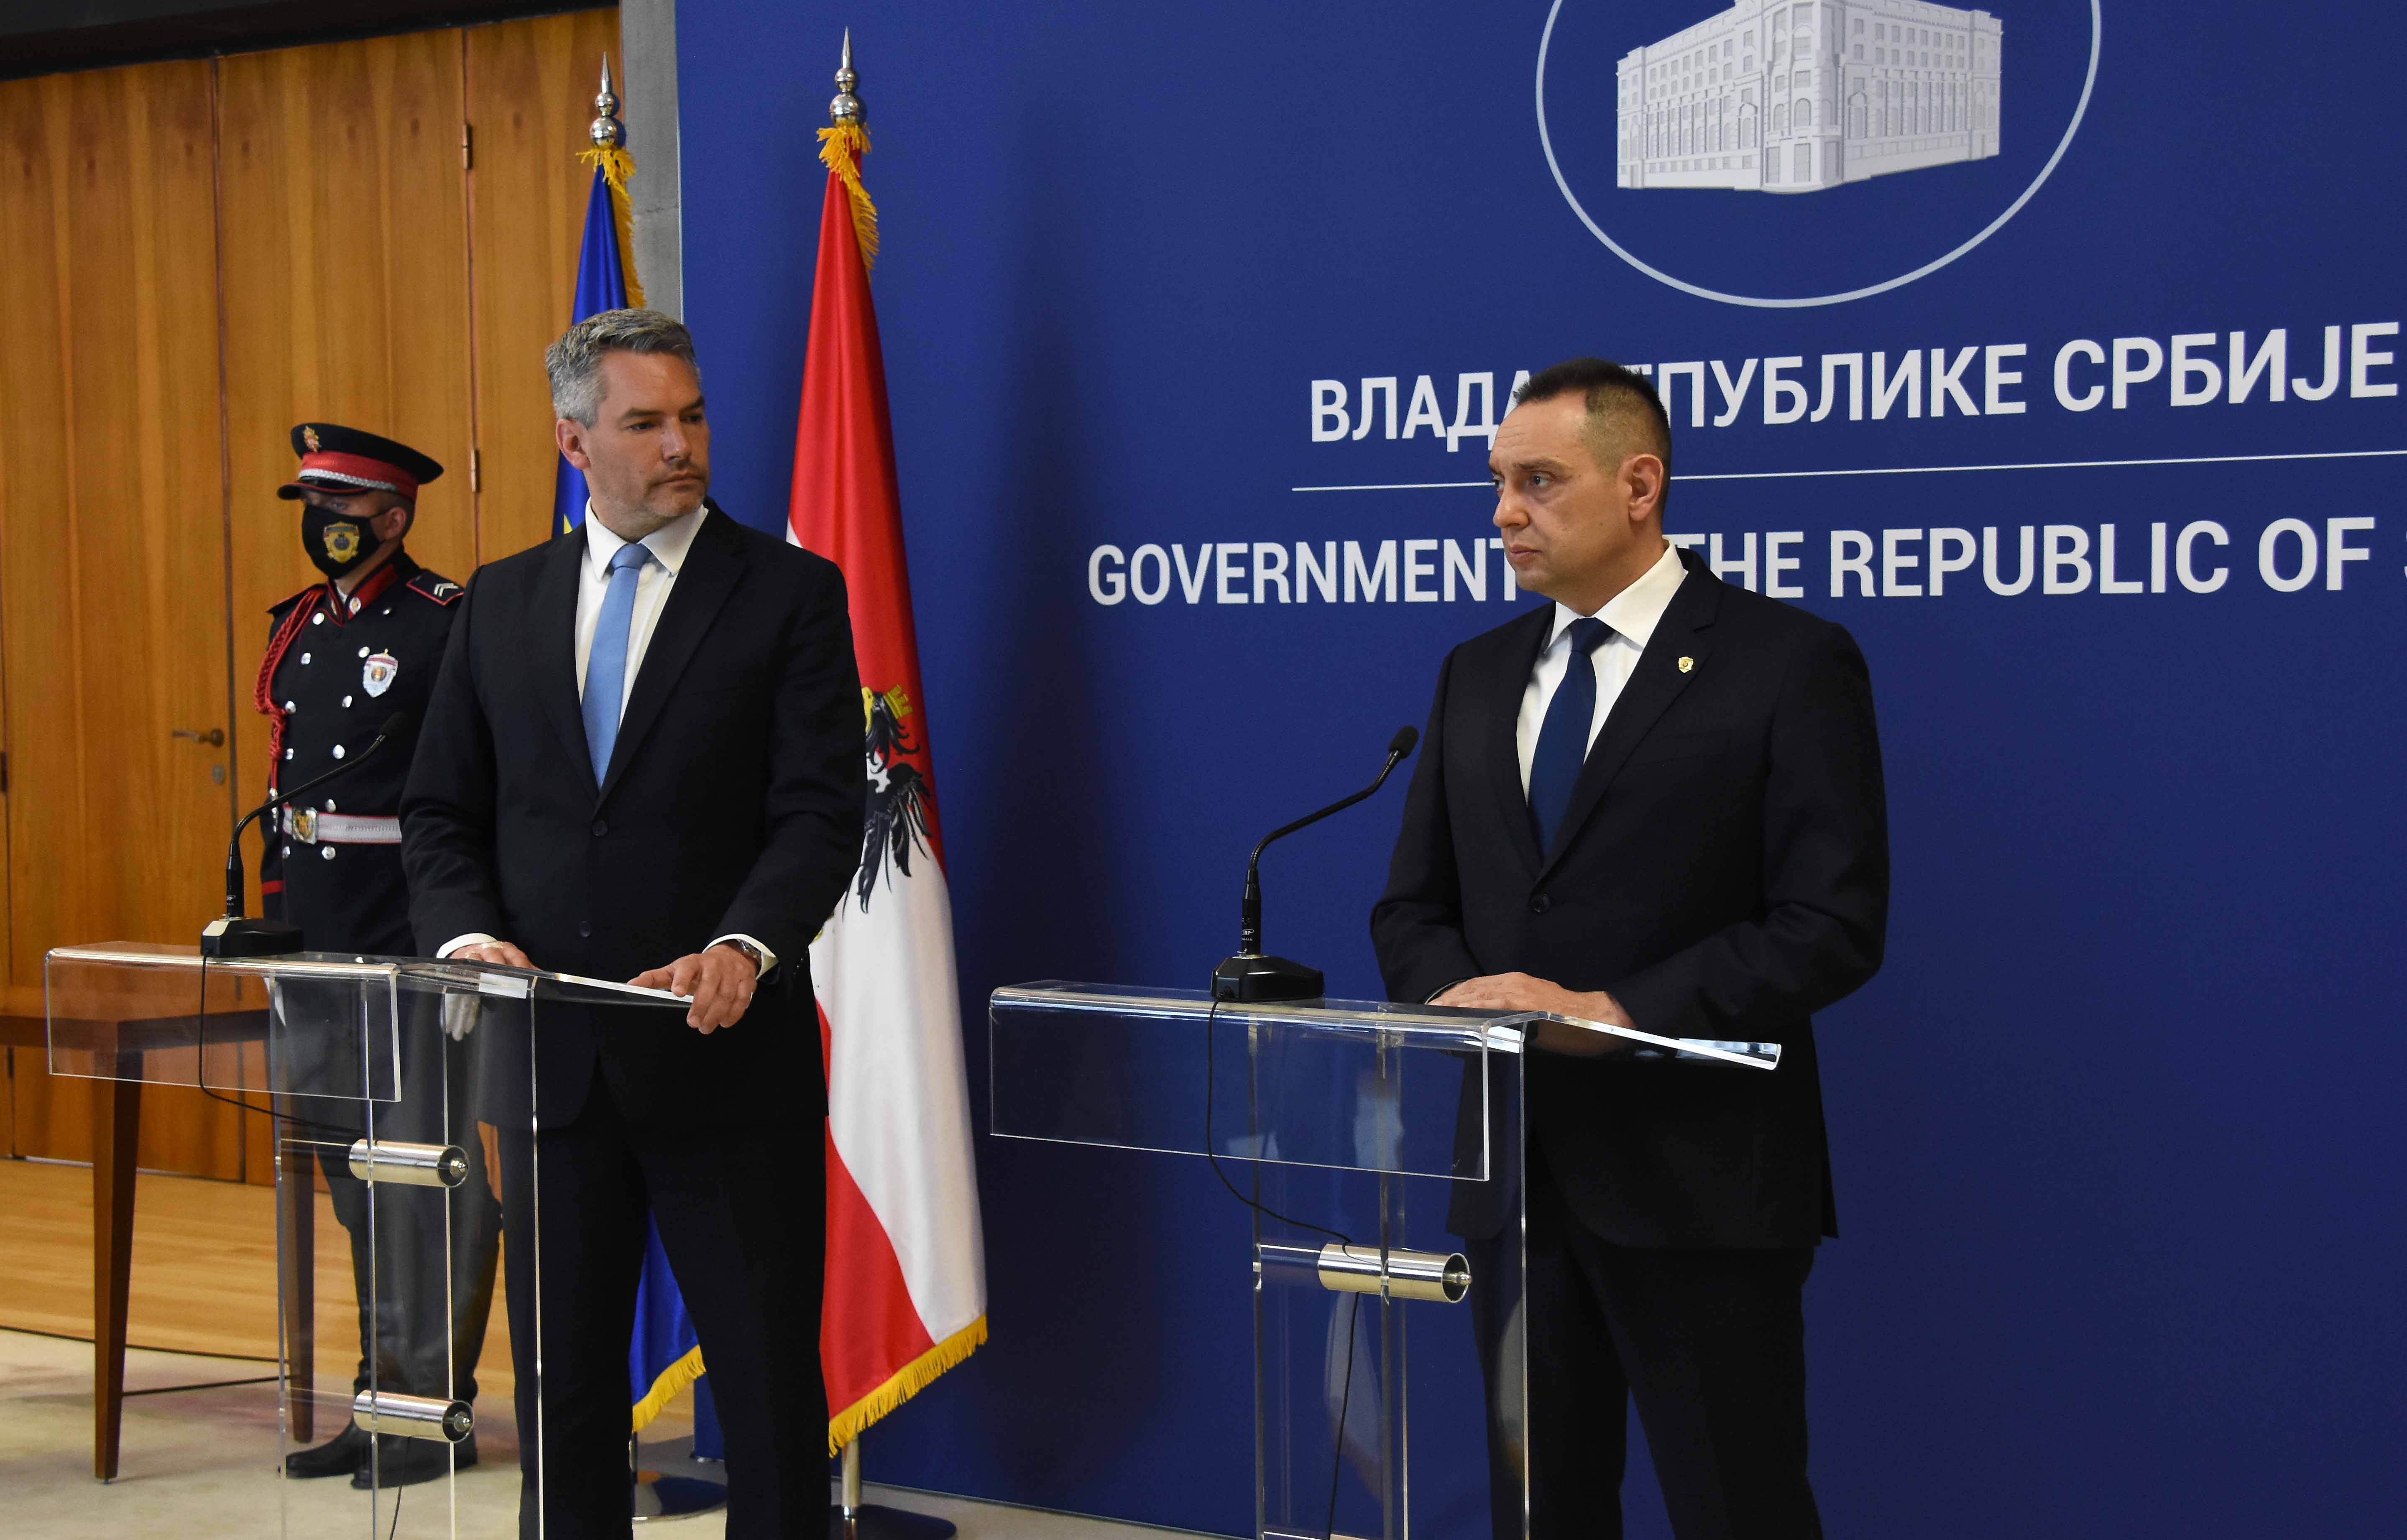 Ministri Vulin i Nehamer: Srbija i Balkan ne mogu postati parking za migrante